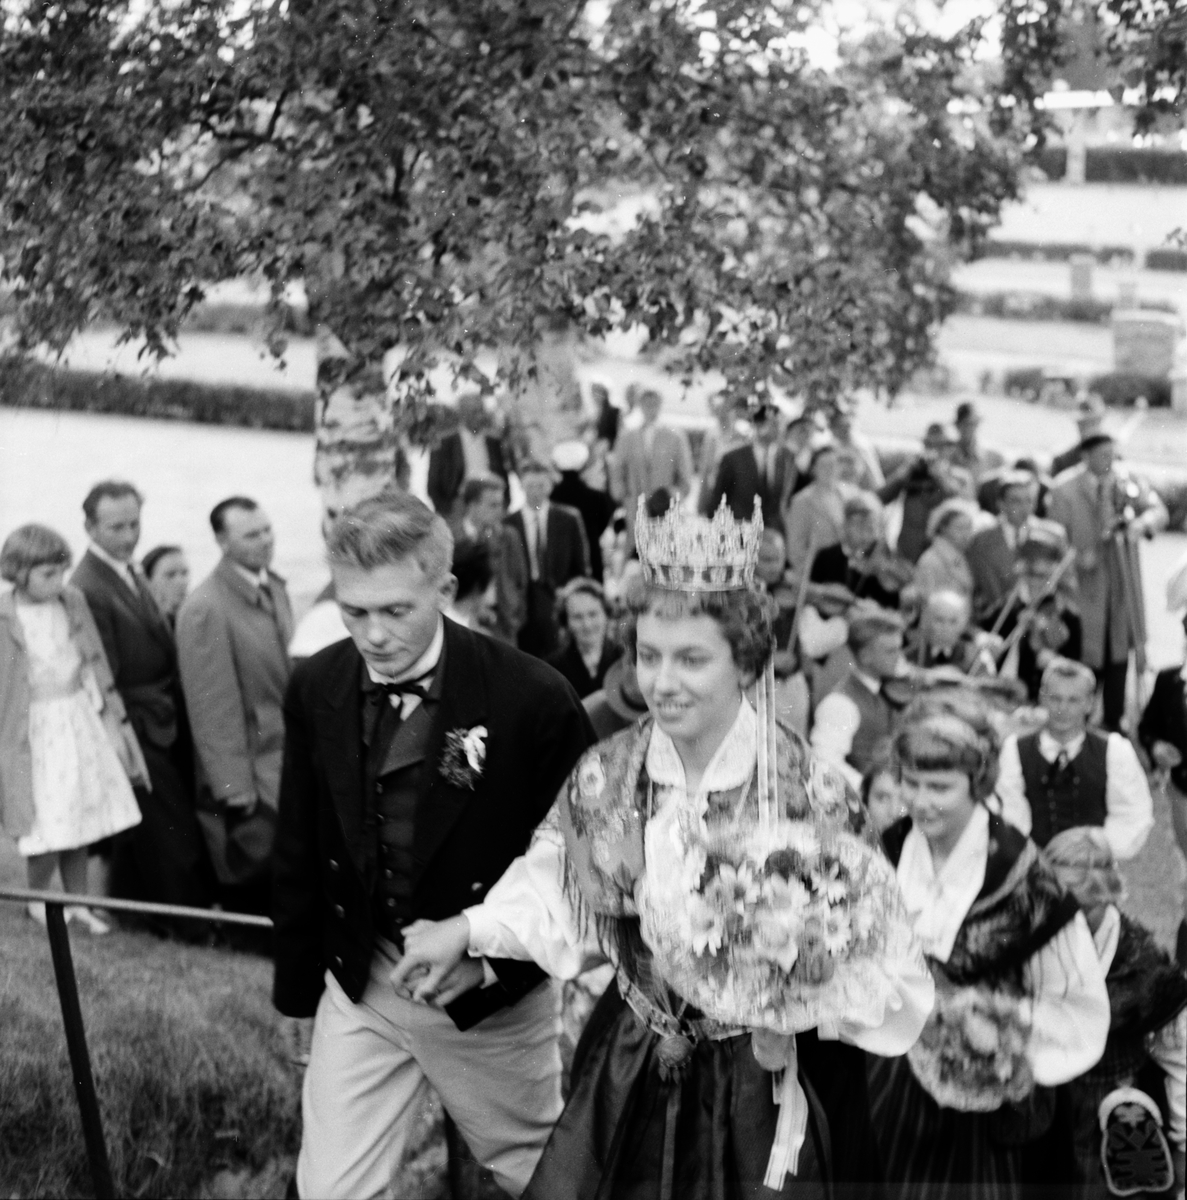 Bröllop mellan Bengt Olsson och Göhlin Ahlström, den 3/8 1958.